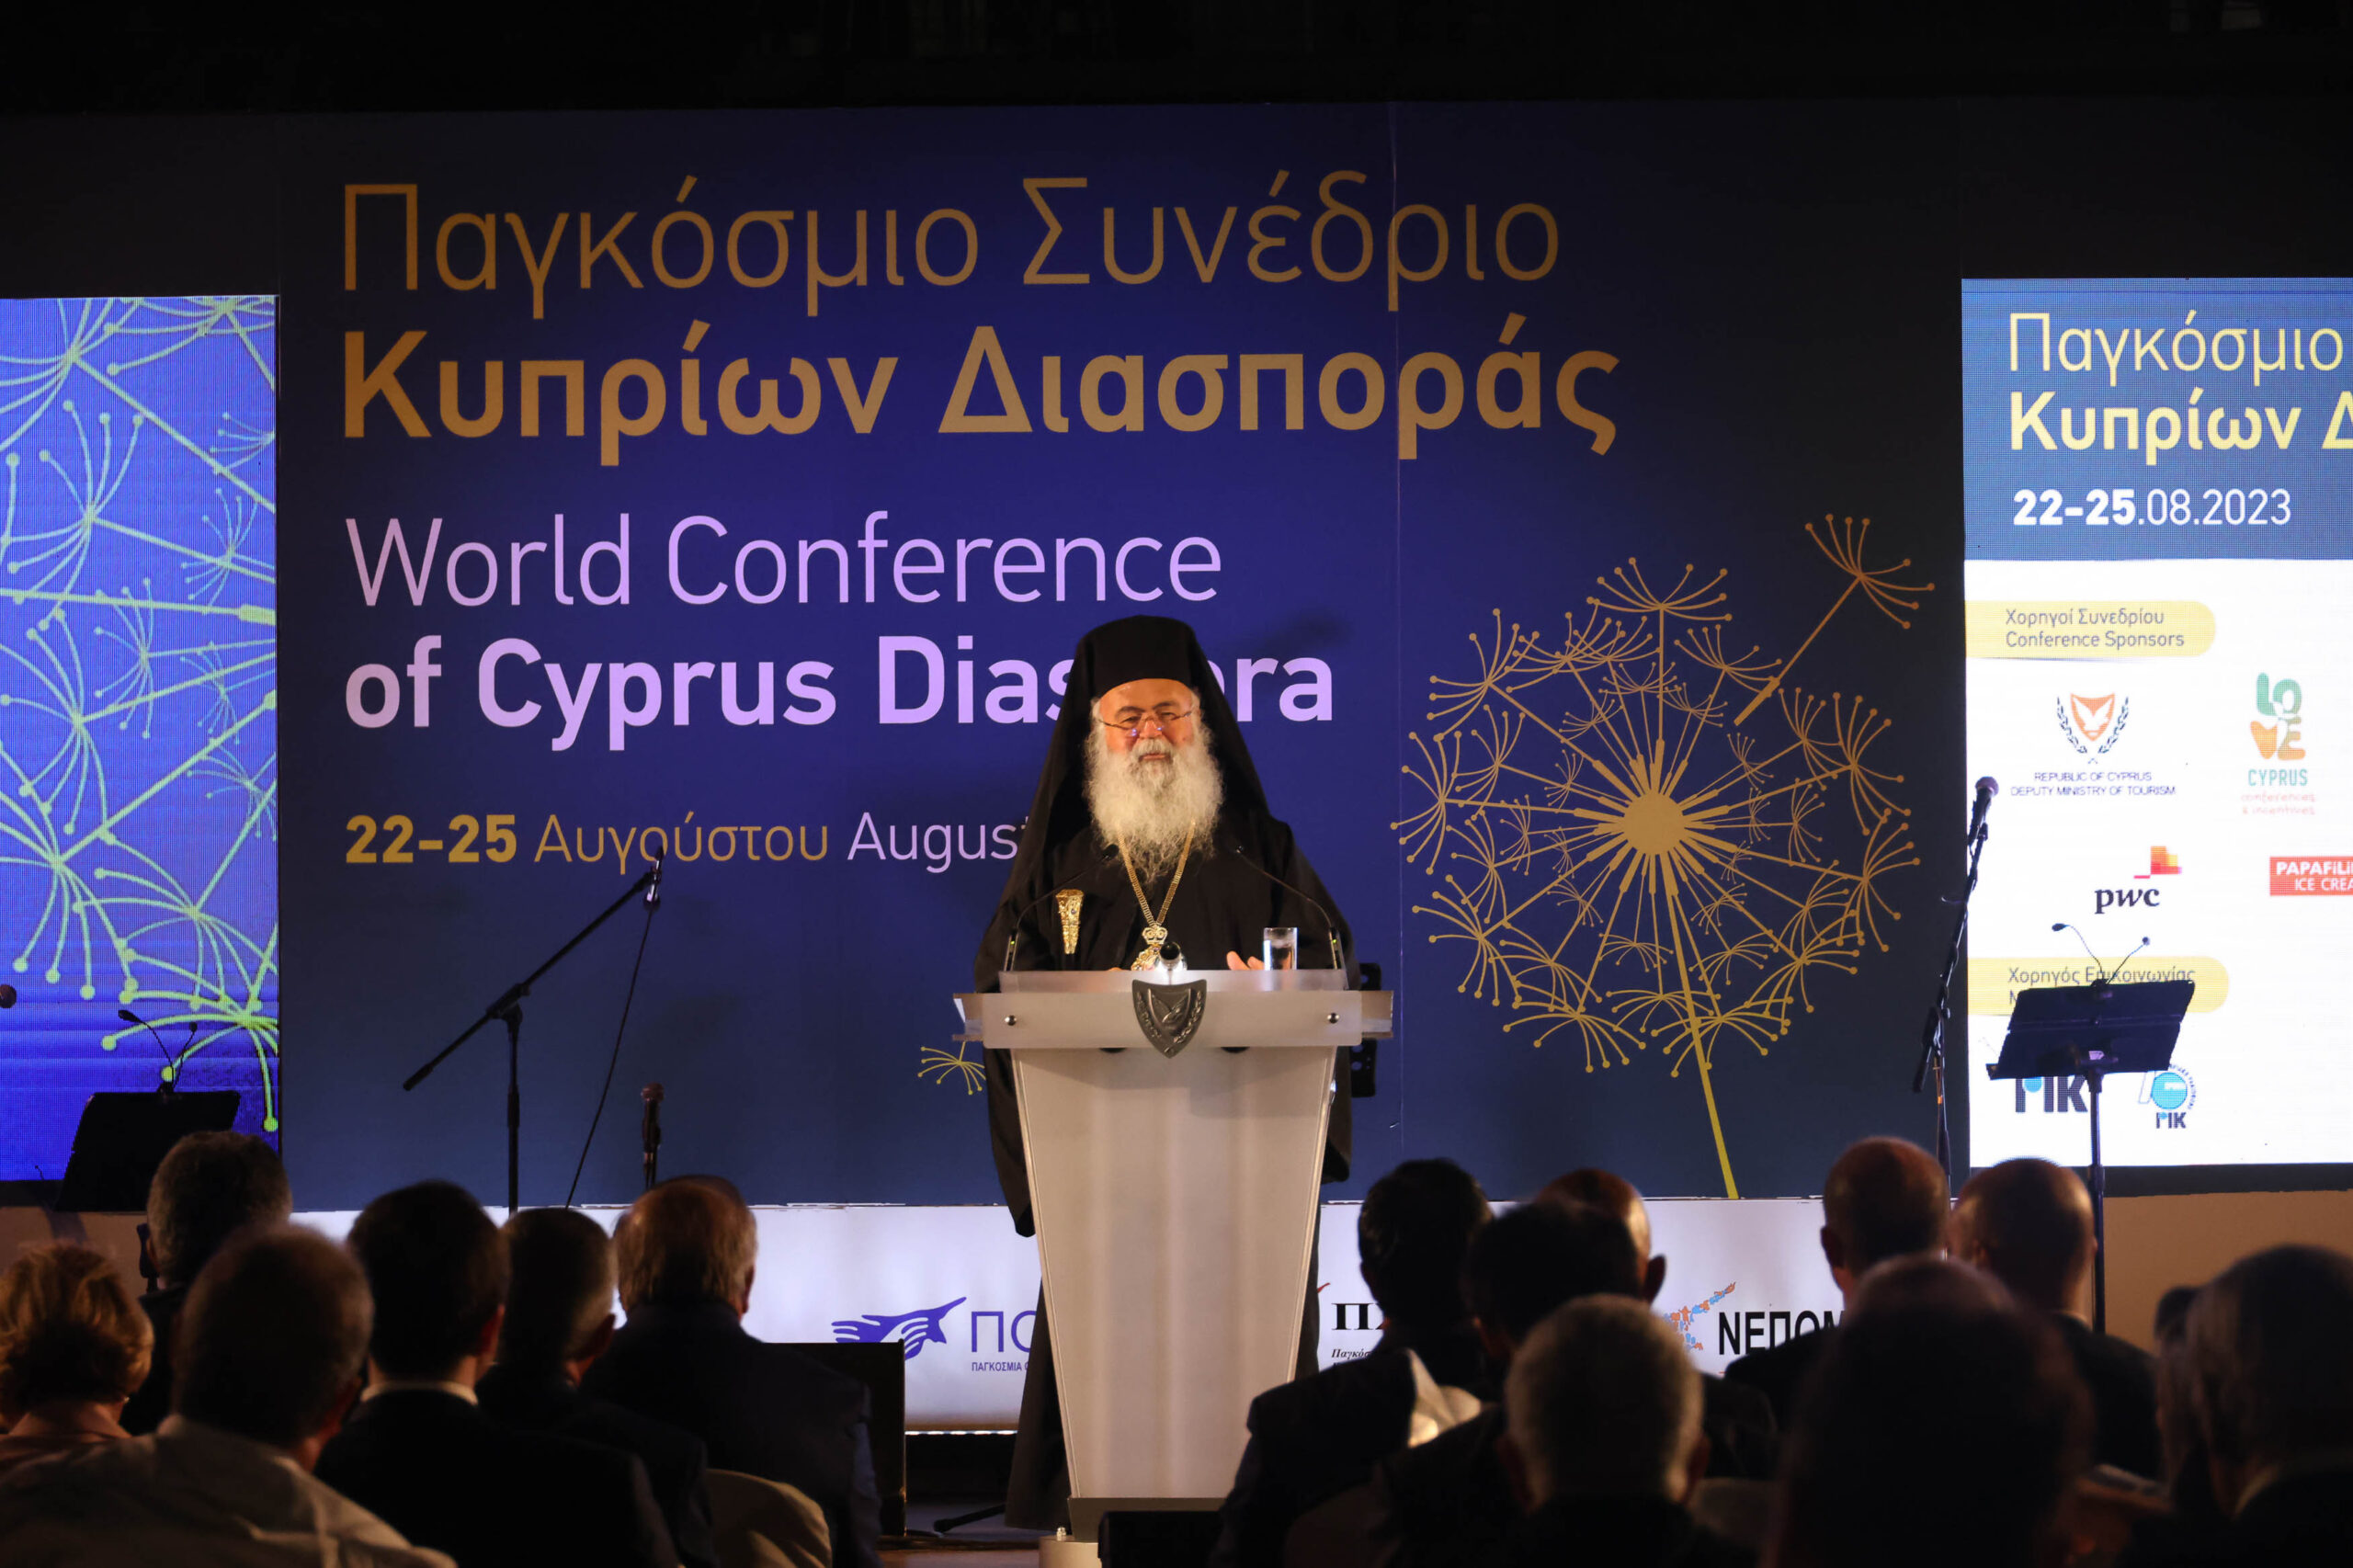 Χαιρετισμός του Μακαριωτάτου Αρχιεπισκόπου Κύπρου κ.κ. Γεωργίου στην Τελετή Έναρξης του Παγκόσμιου Συνεδρίου Κυπρίων Διασποράς (22 Αυγούστου 2023) 